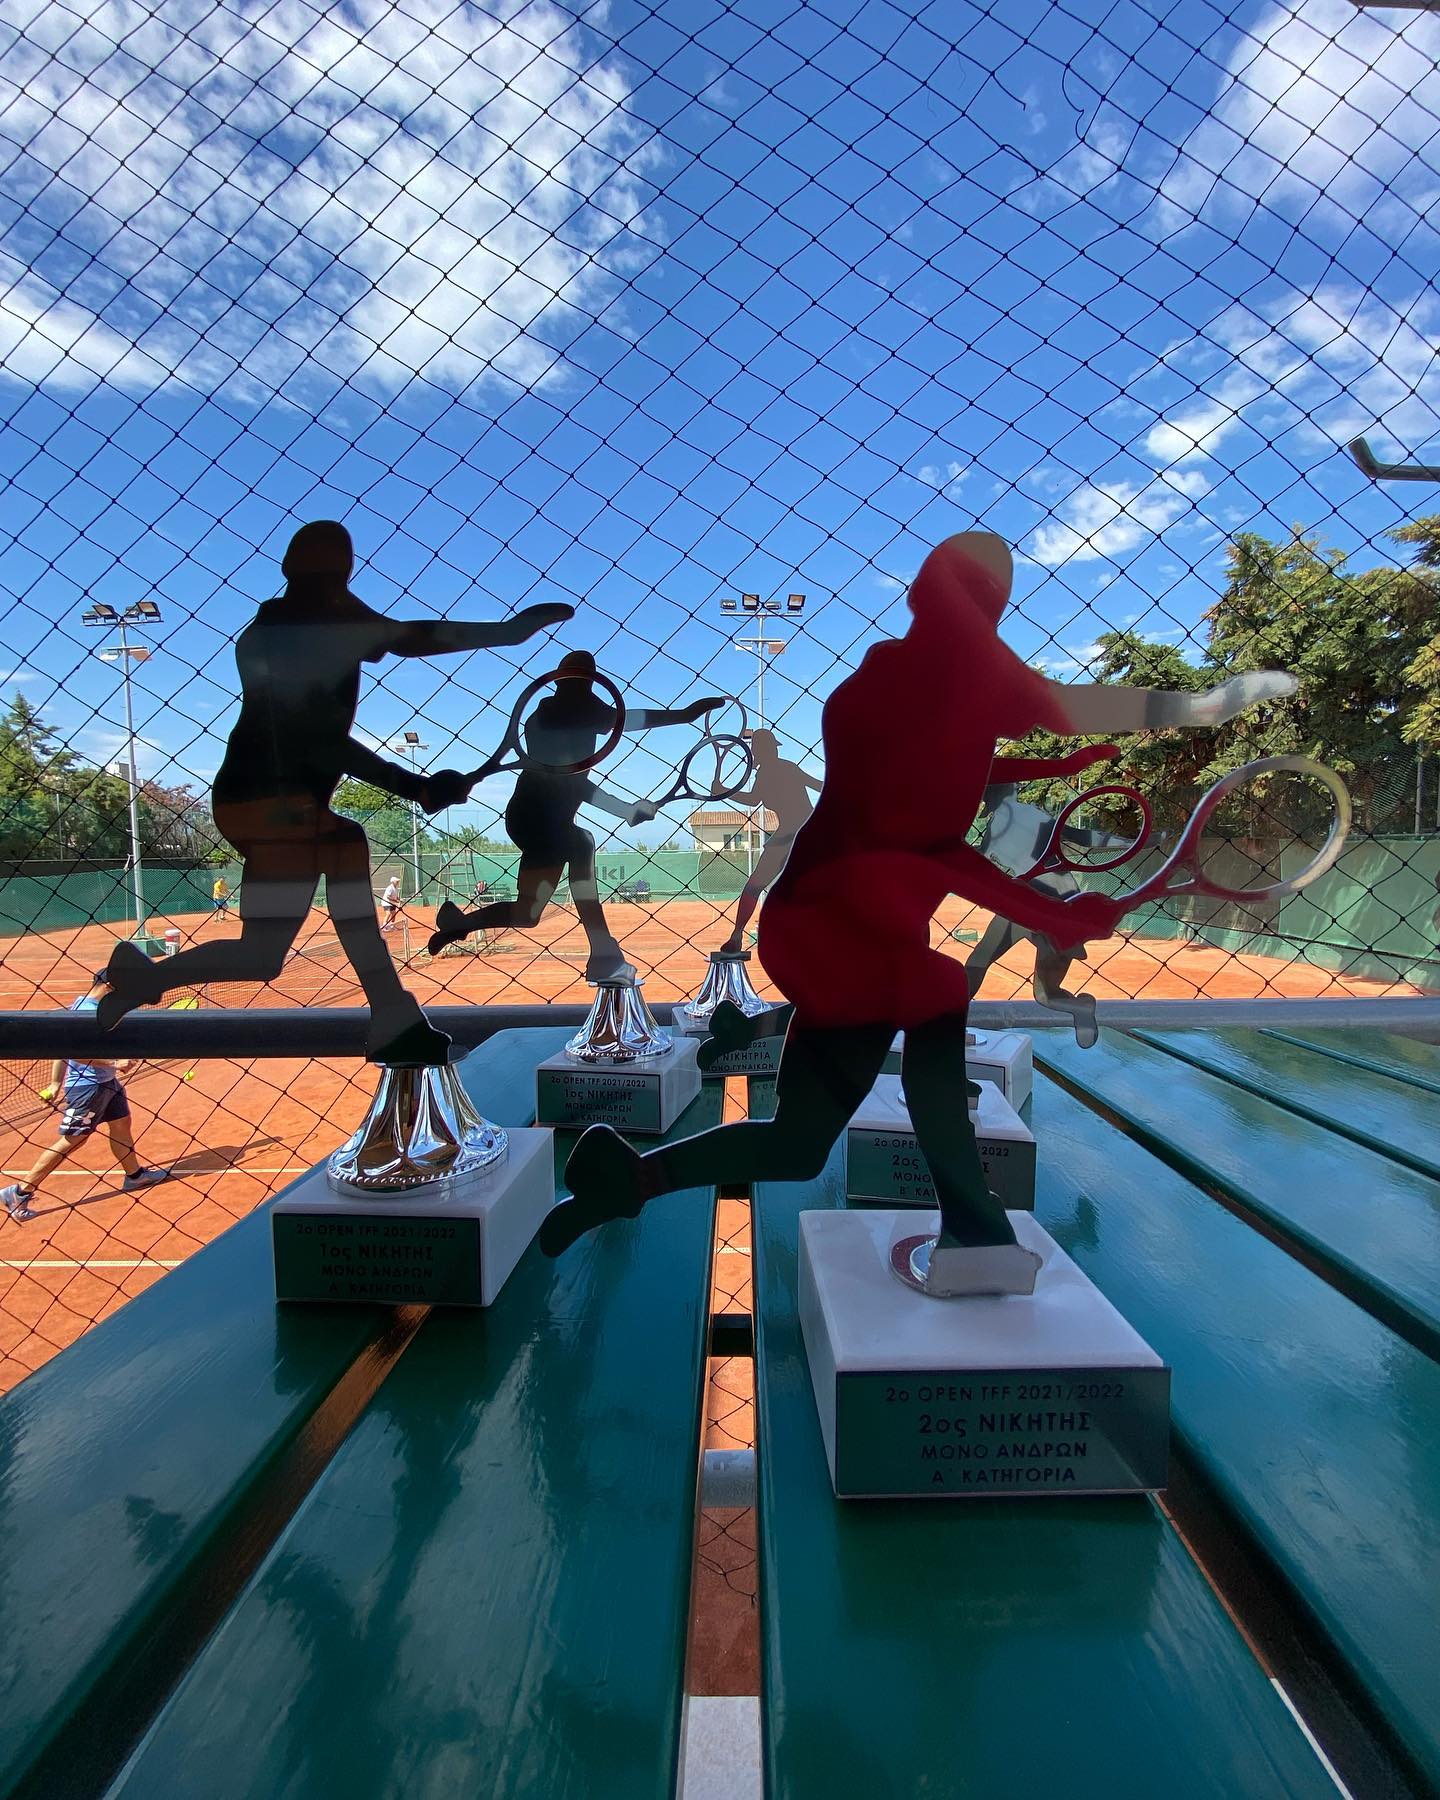 Ωραίες στιγμές τένις στο 2ο OPEN TFF στο Αγγελοχώρι (ΦΩΤΟΡΕΠΟΡΤΑΖ)